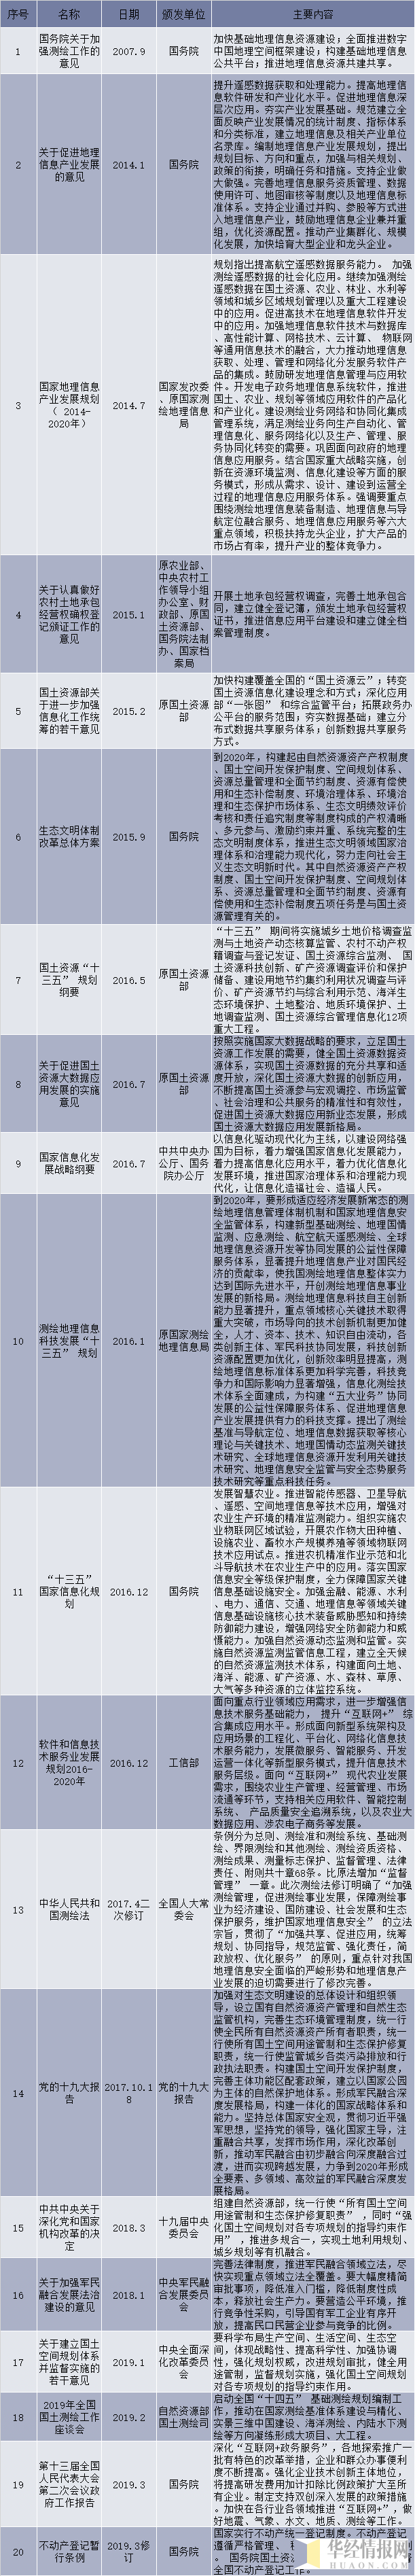 中国地理信息行业相关法律法规